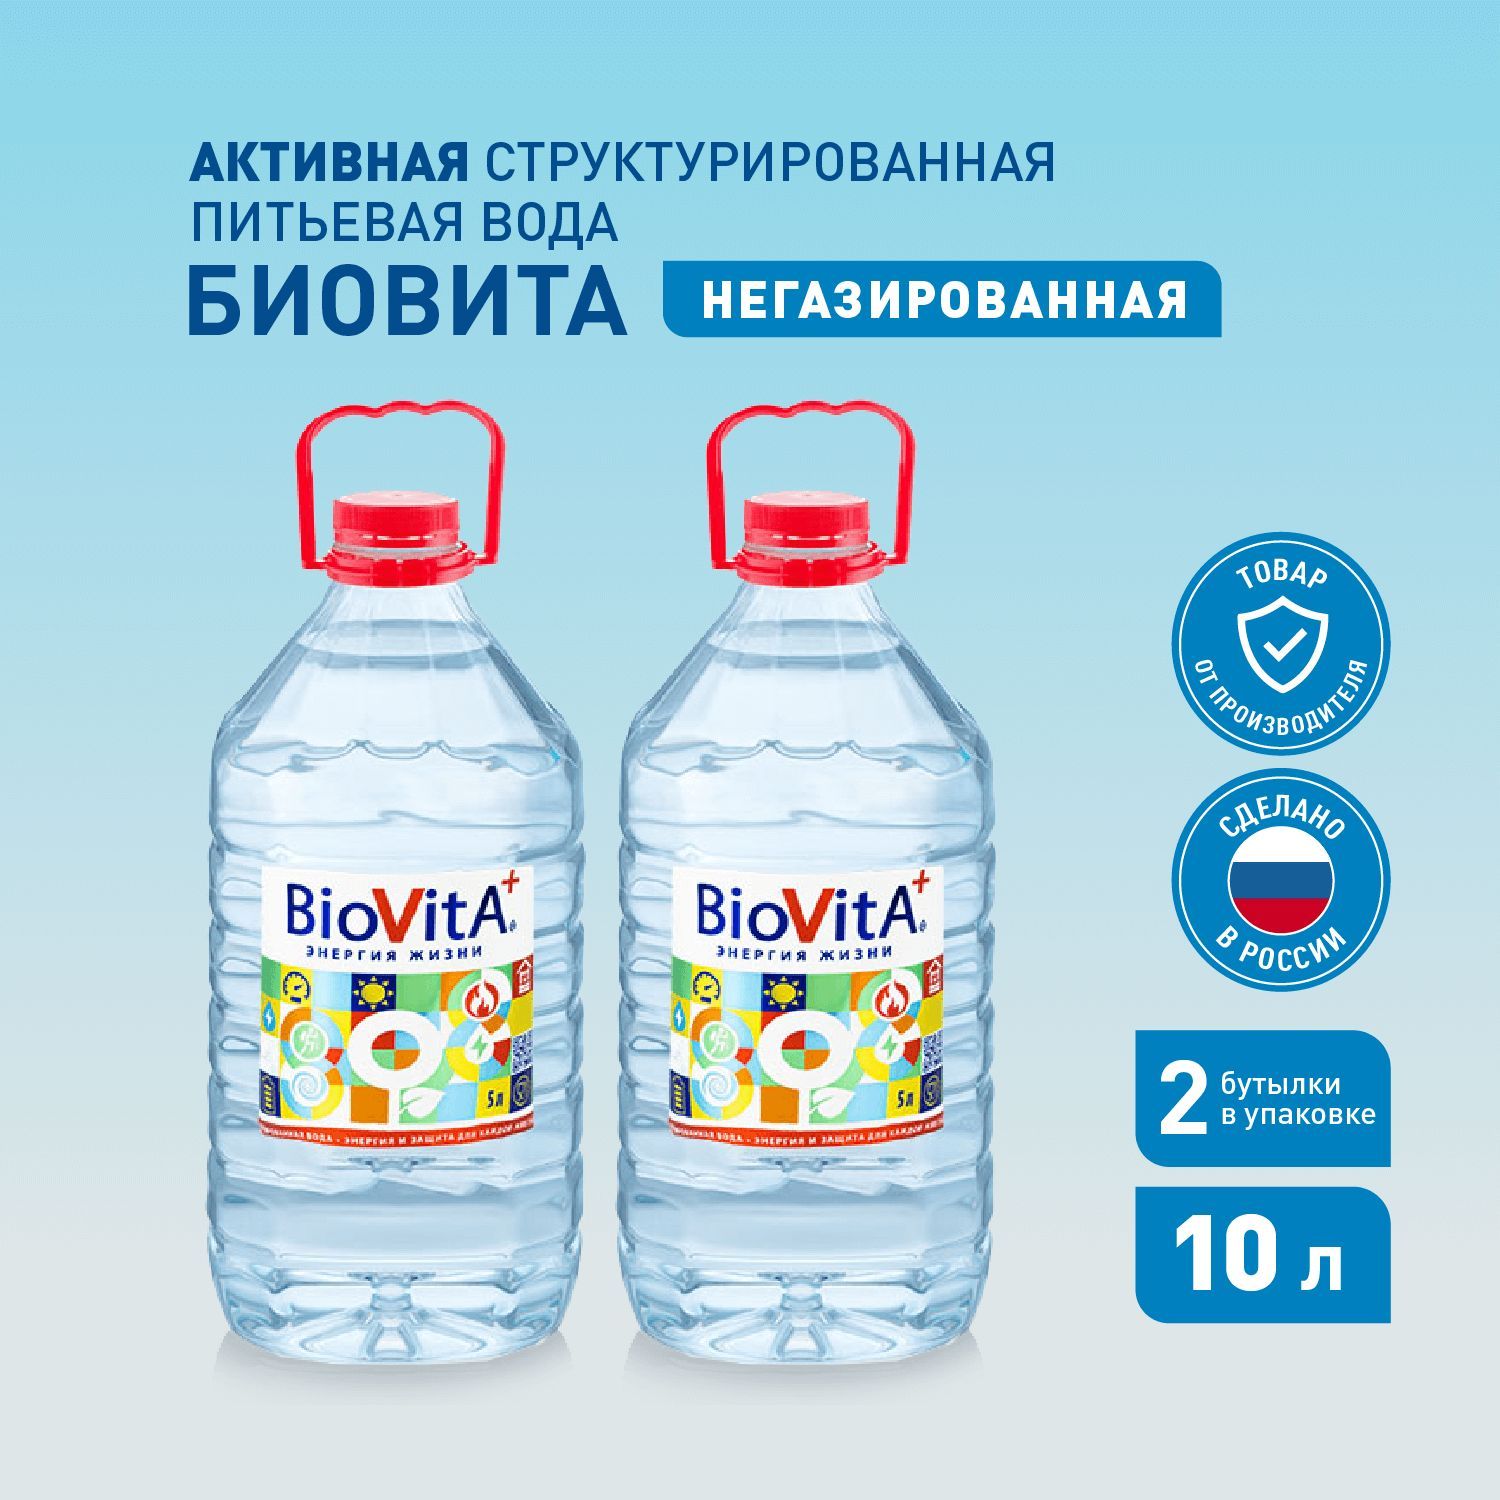 Питьевая вода Биовита. Структурированная вода «Biovita». Вода стелмас и Биовита. Марки структурированной воды. Вода биовита купить